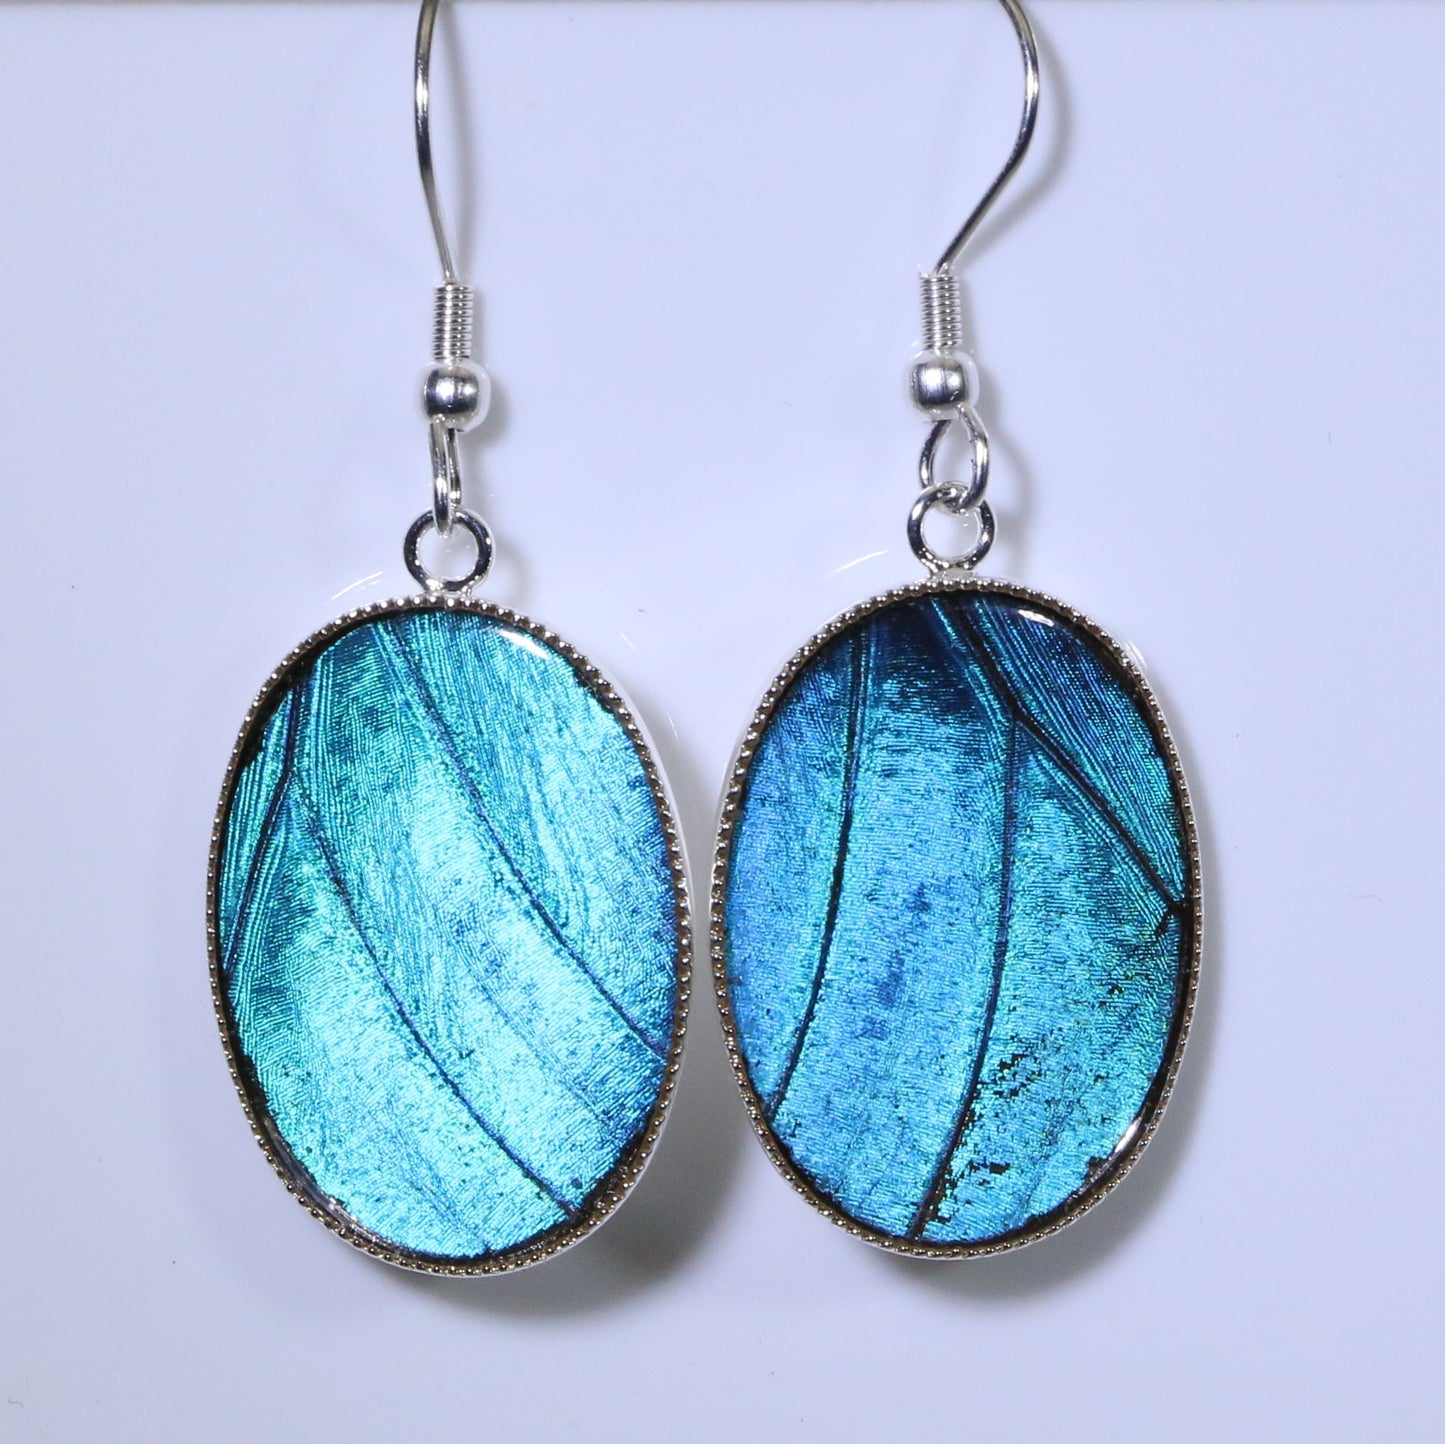 51201 - Real Butterfly Wing Jewelry - Earrings - Medium - Blue Morpho